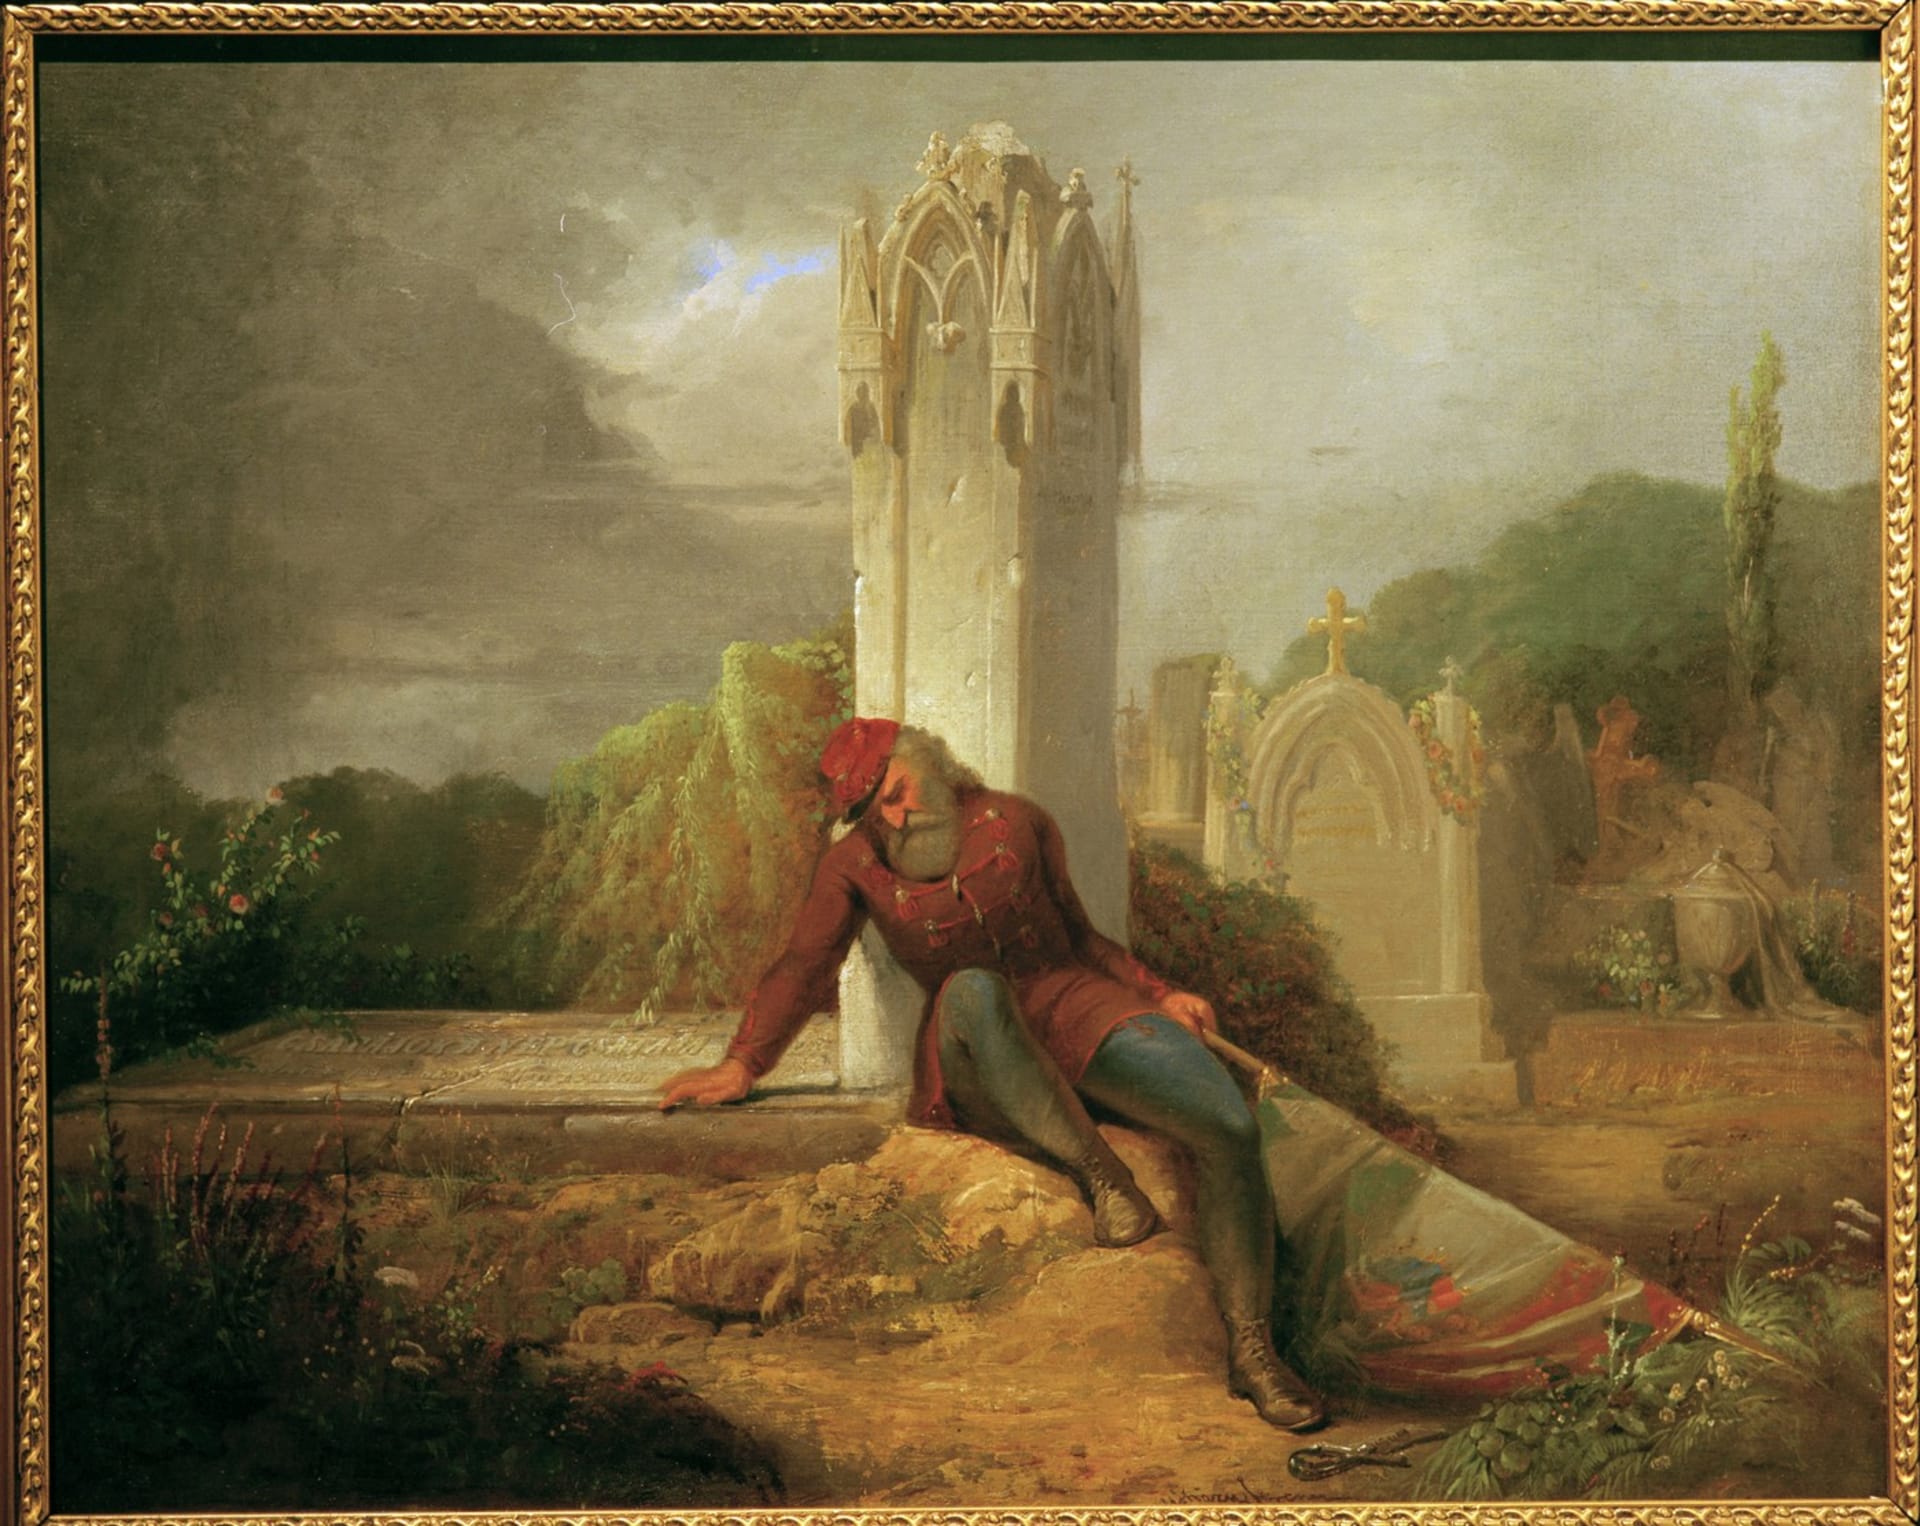 Obraz Truchlící honvéd zachycuje zklamání po porážce maďarské revoluce v roce 1848